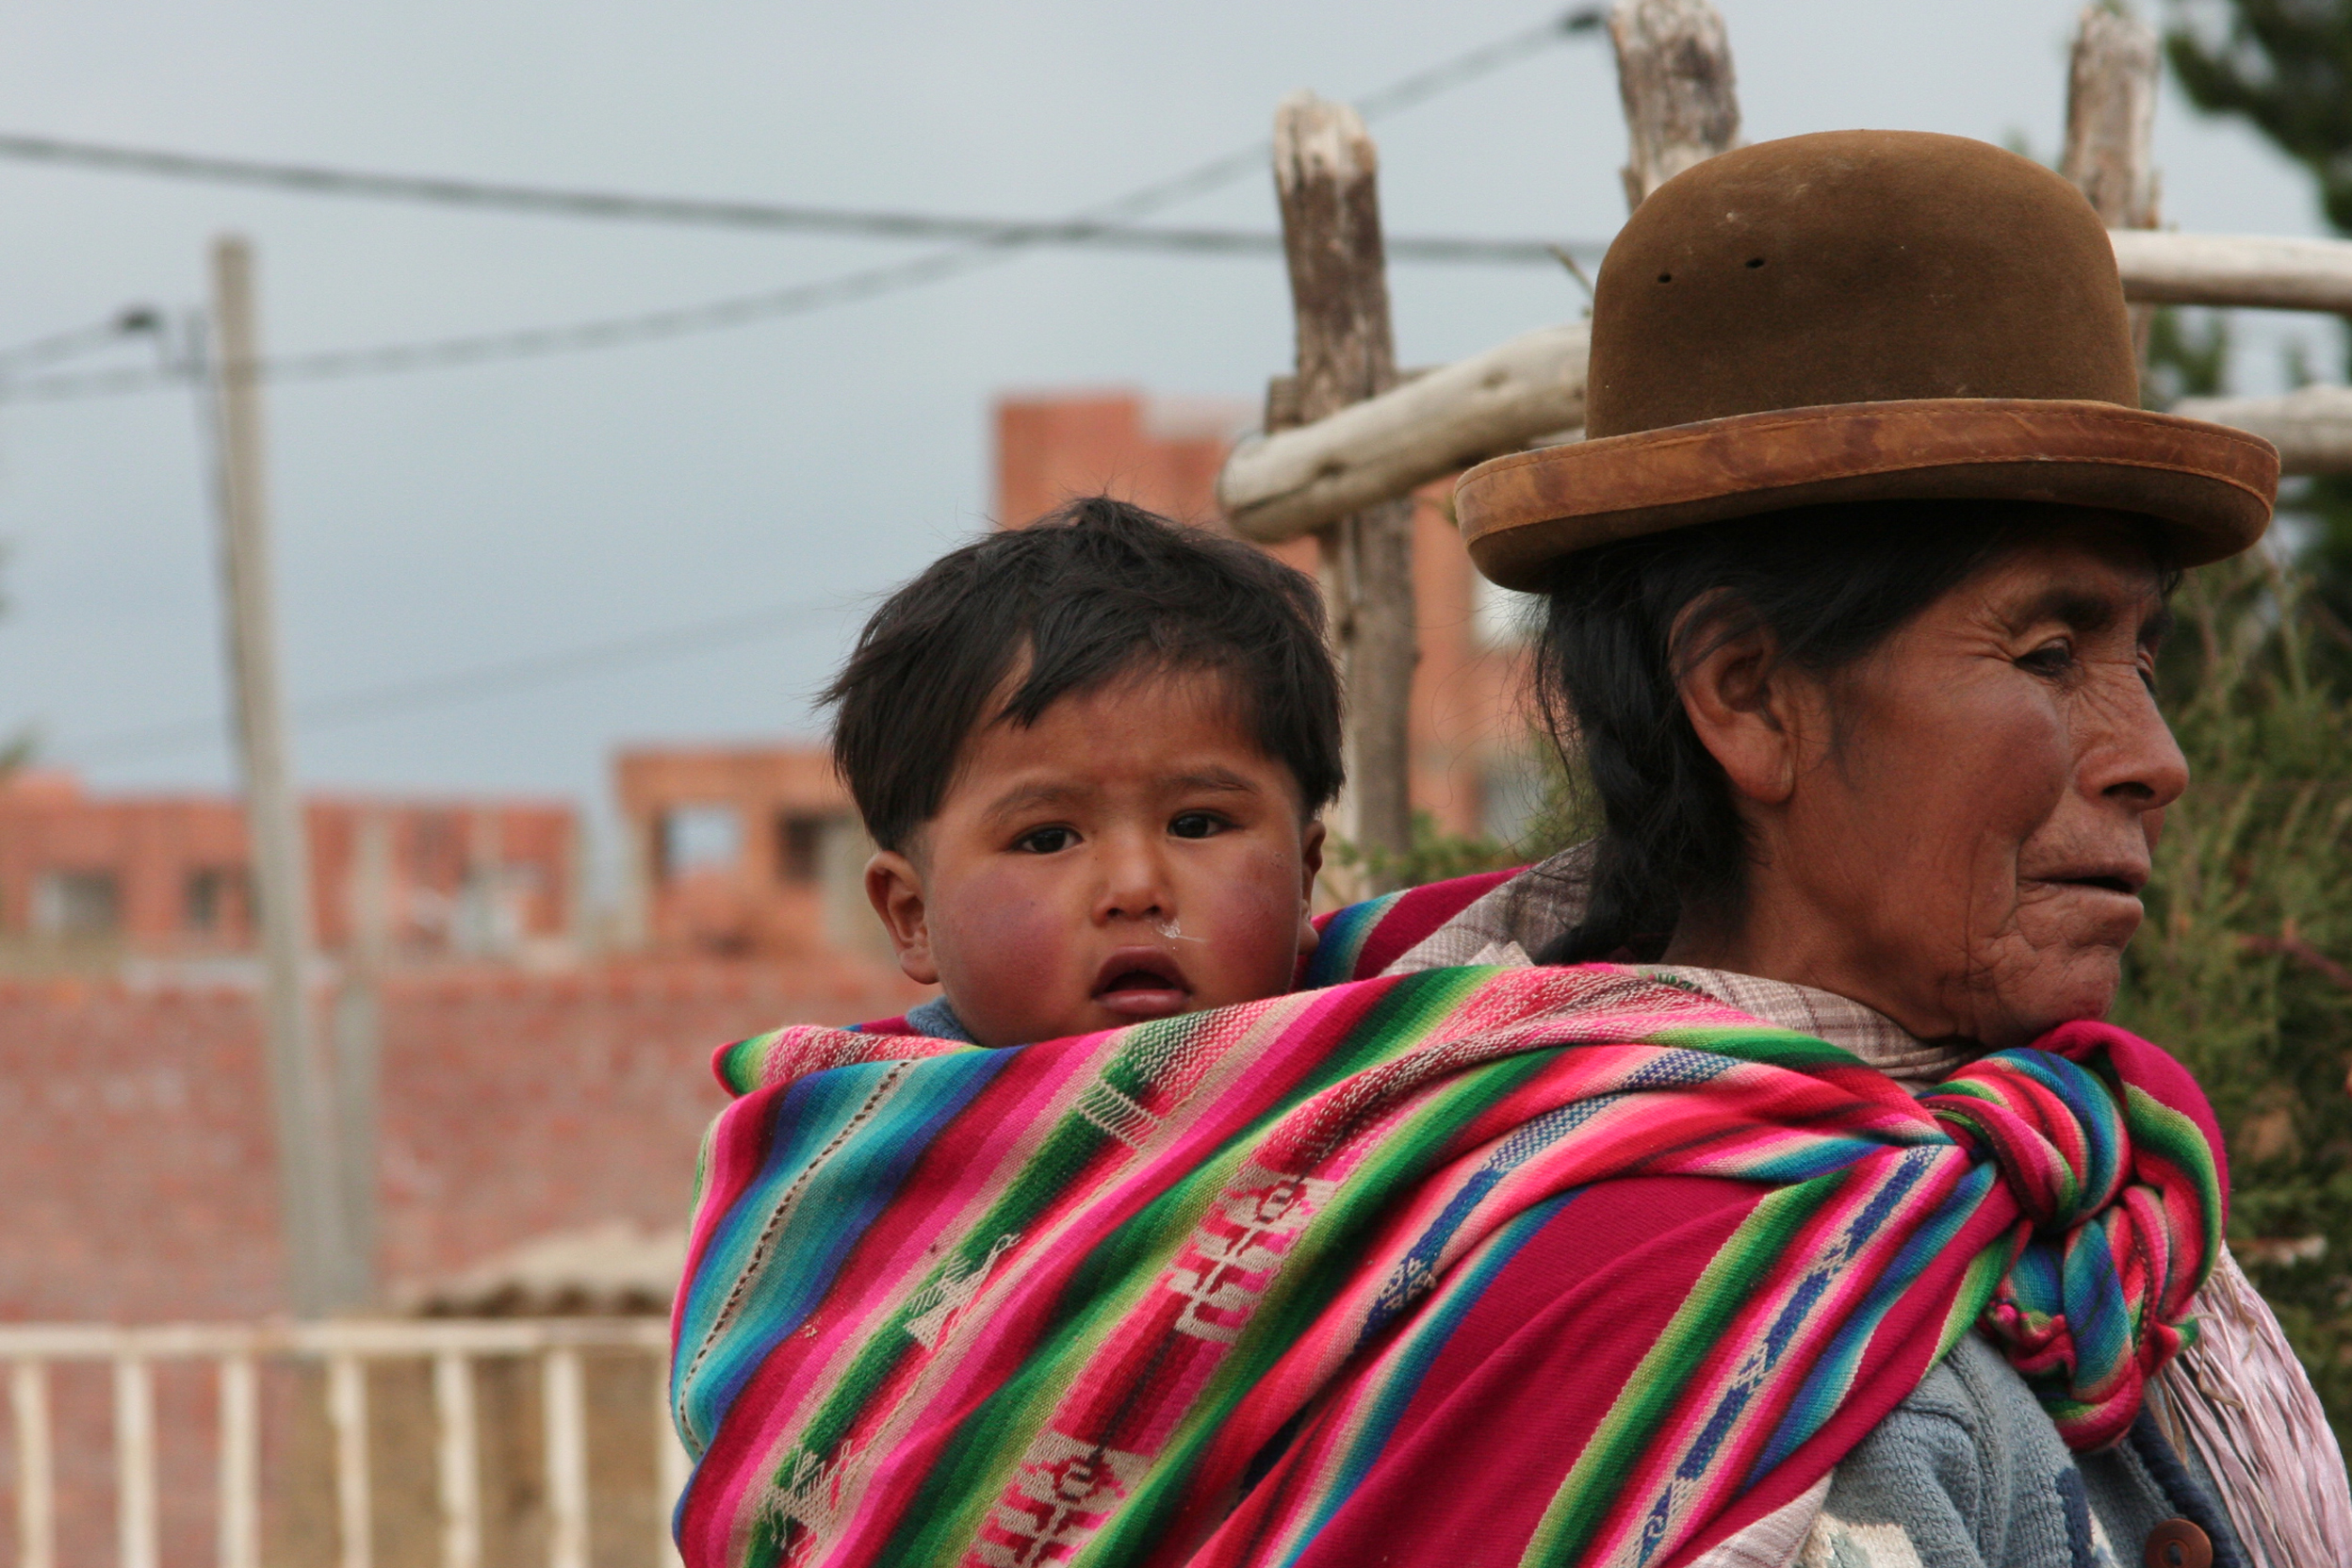 Mujeres indígenas demandan garantizar el uso de sus derechos